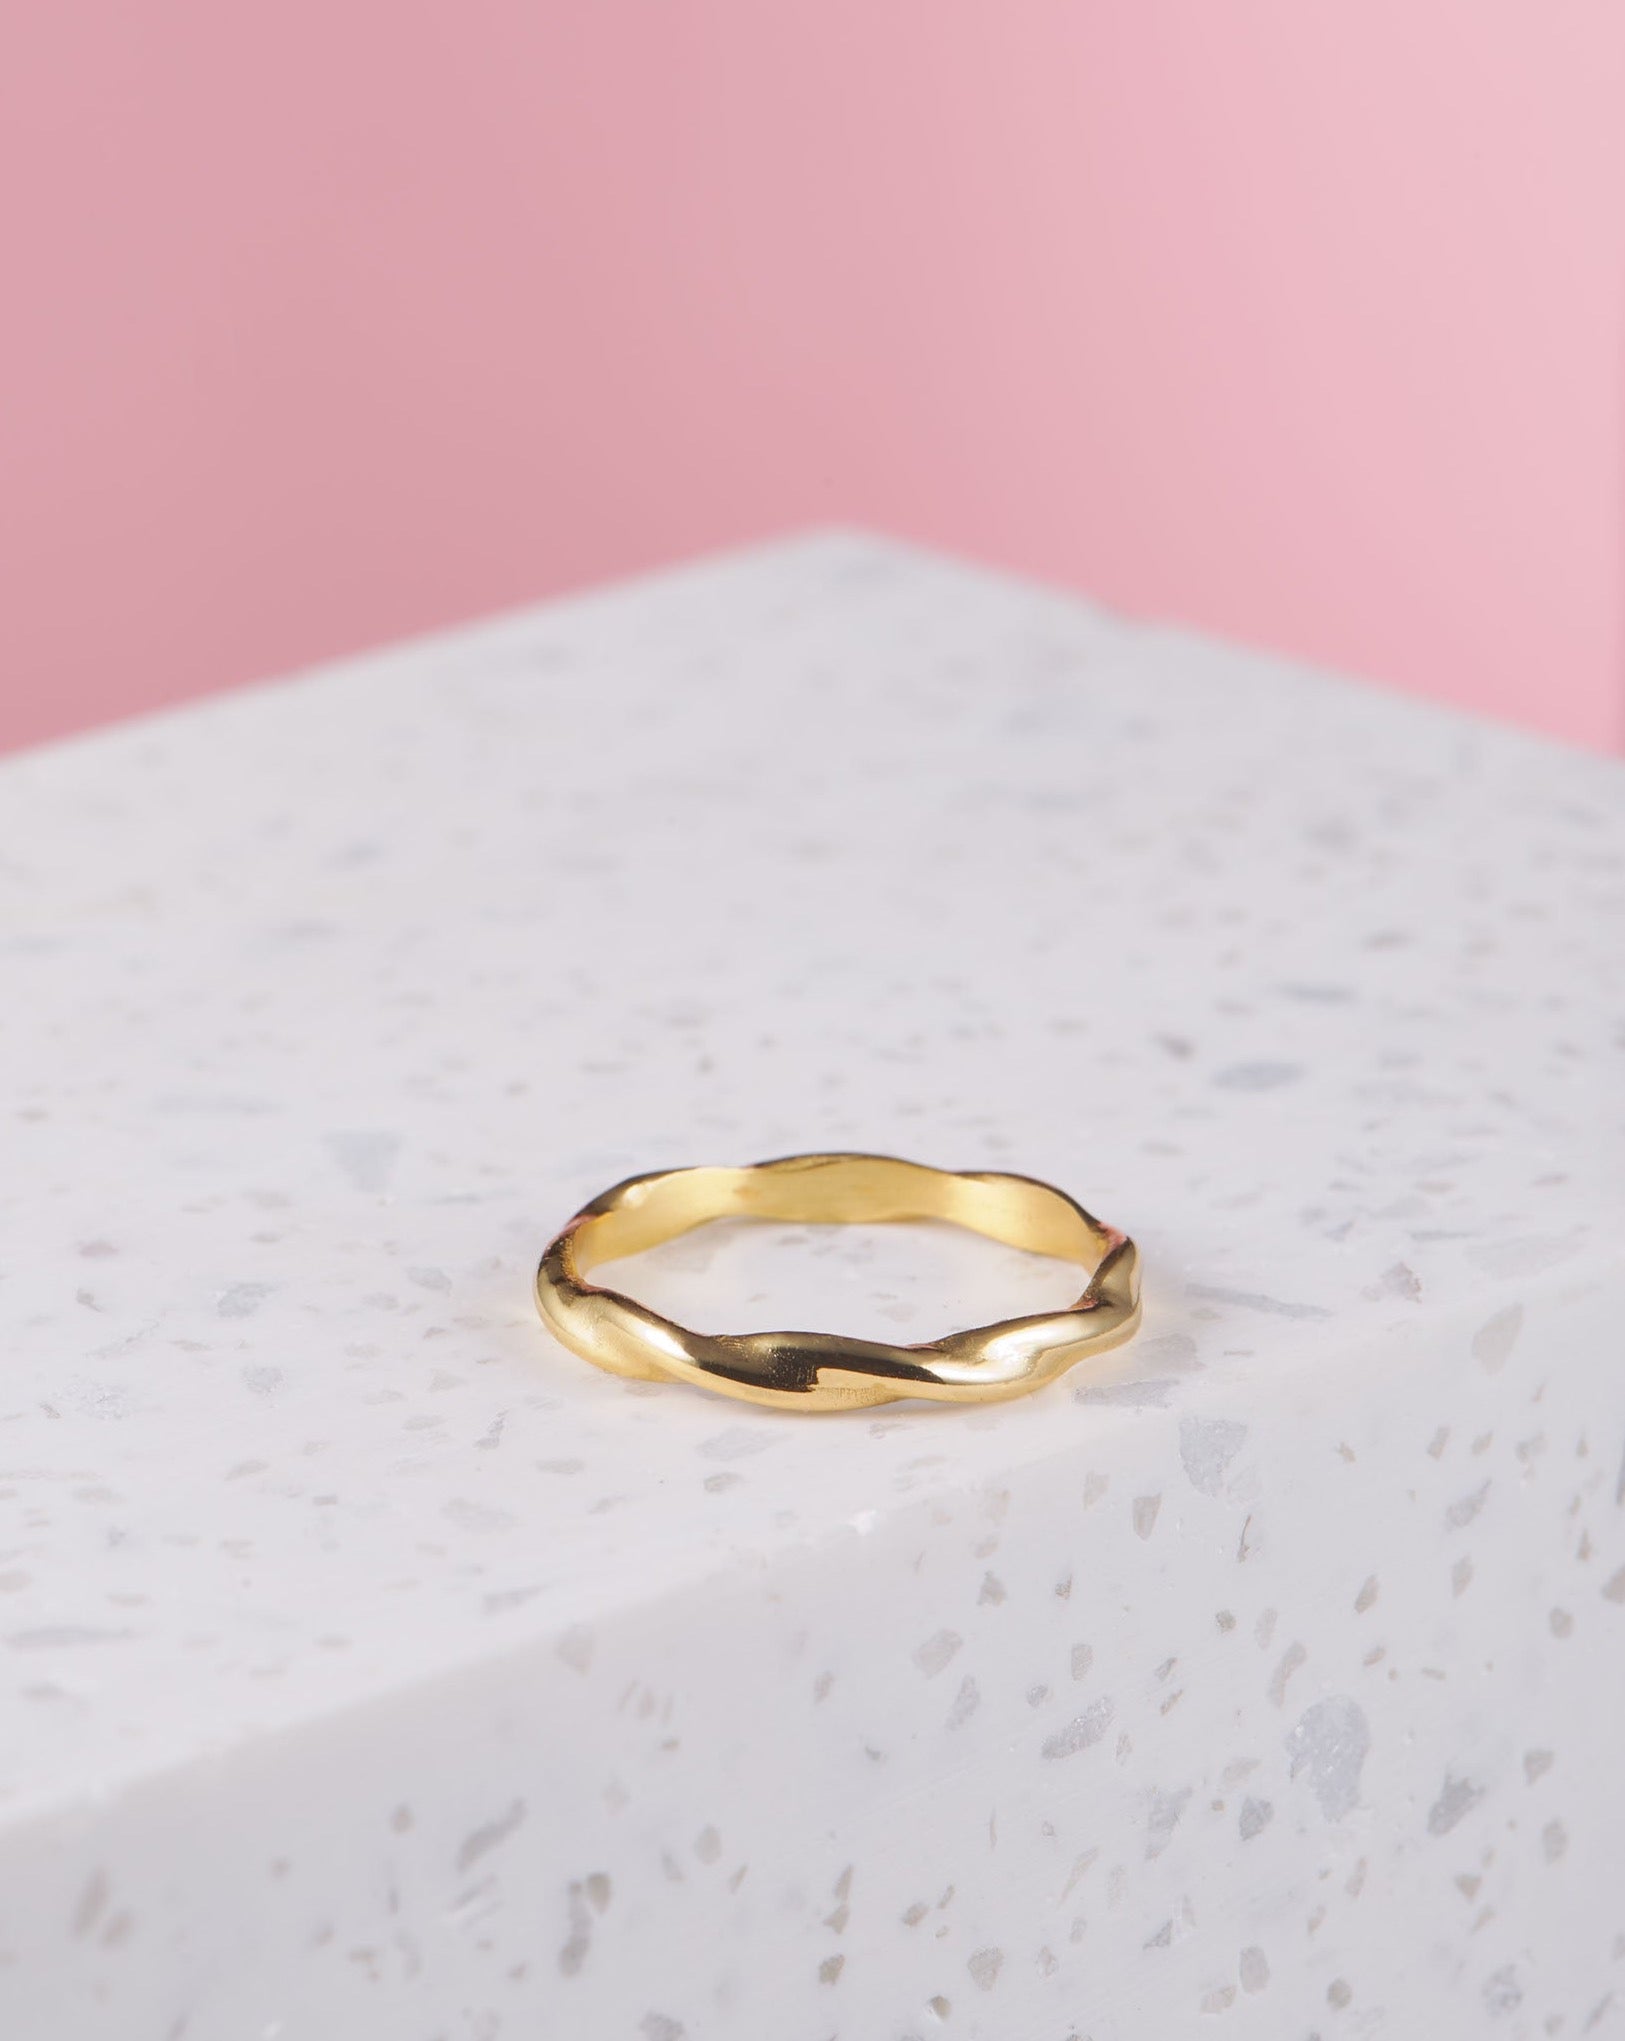 Eingedrehter goldener Ring | VERLAN Jewellery | handgemachter schmuck aus Bali | das perfekte Geschenk für Freundin finden